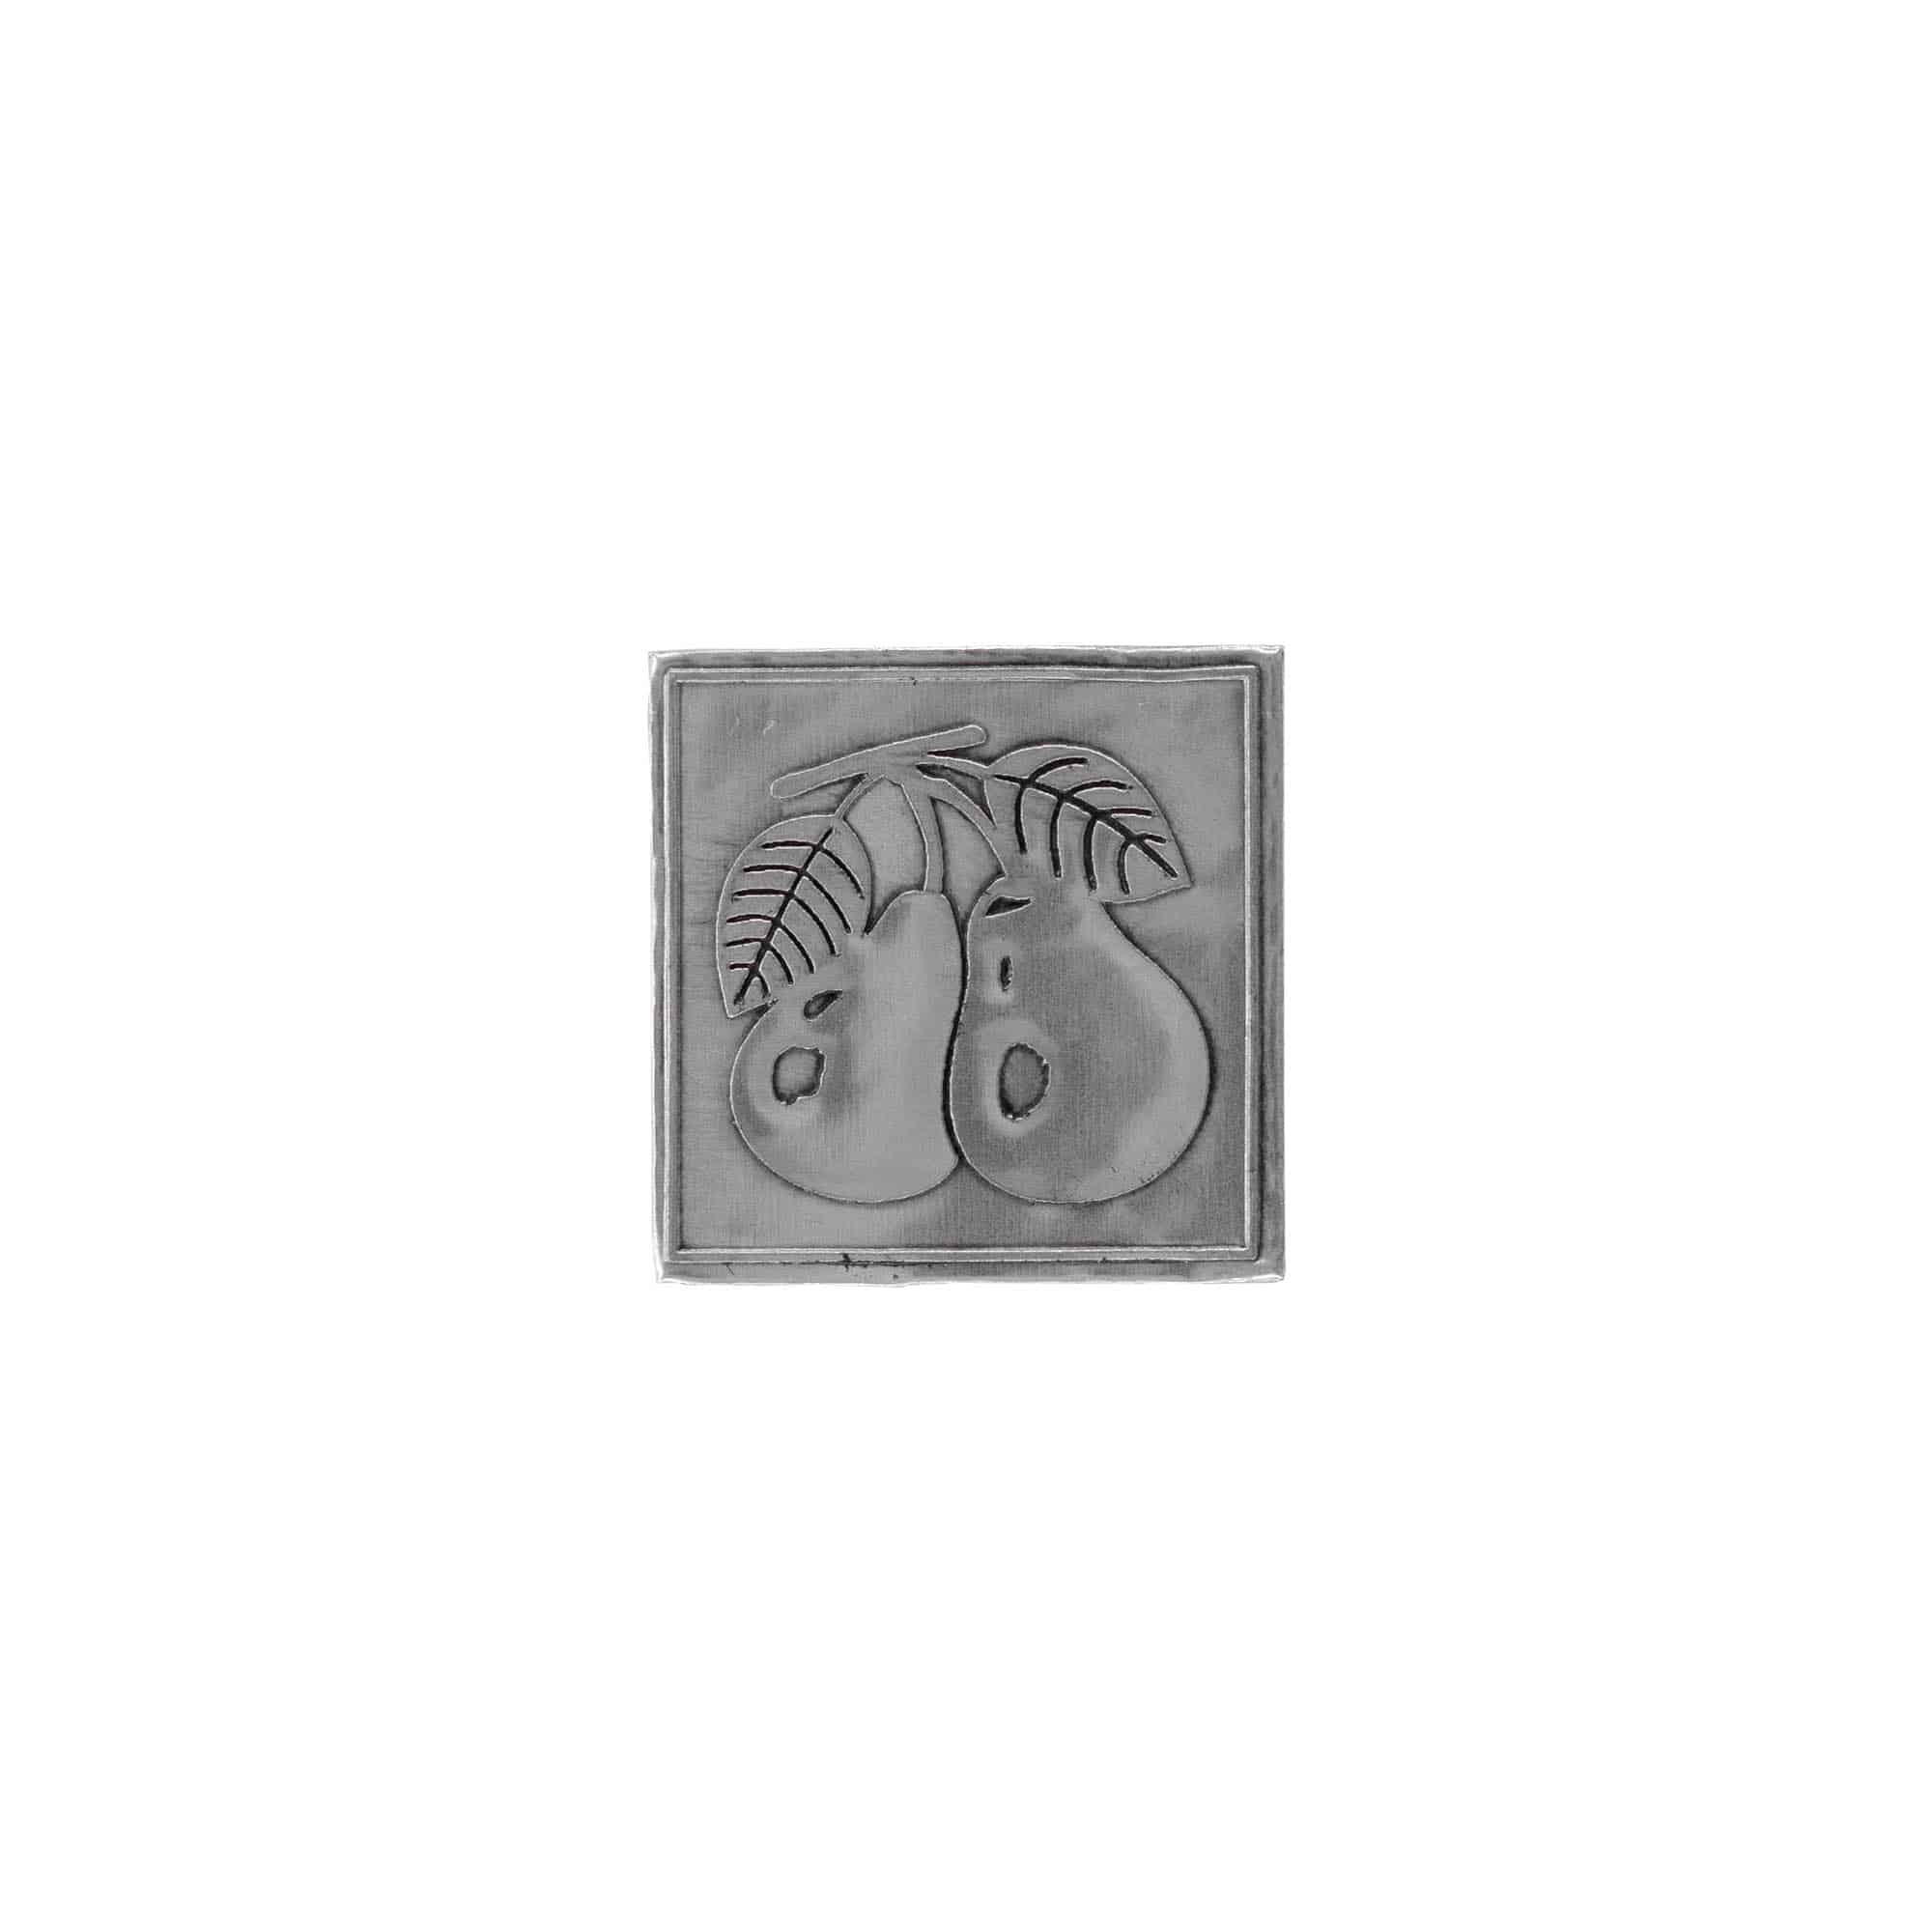 Etichetta metallica 'Pera', quadrata, stagno, argento